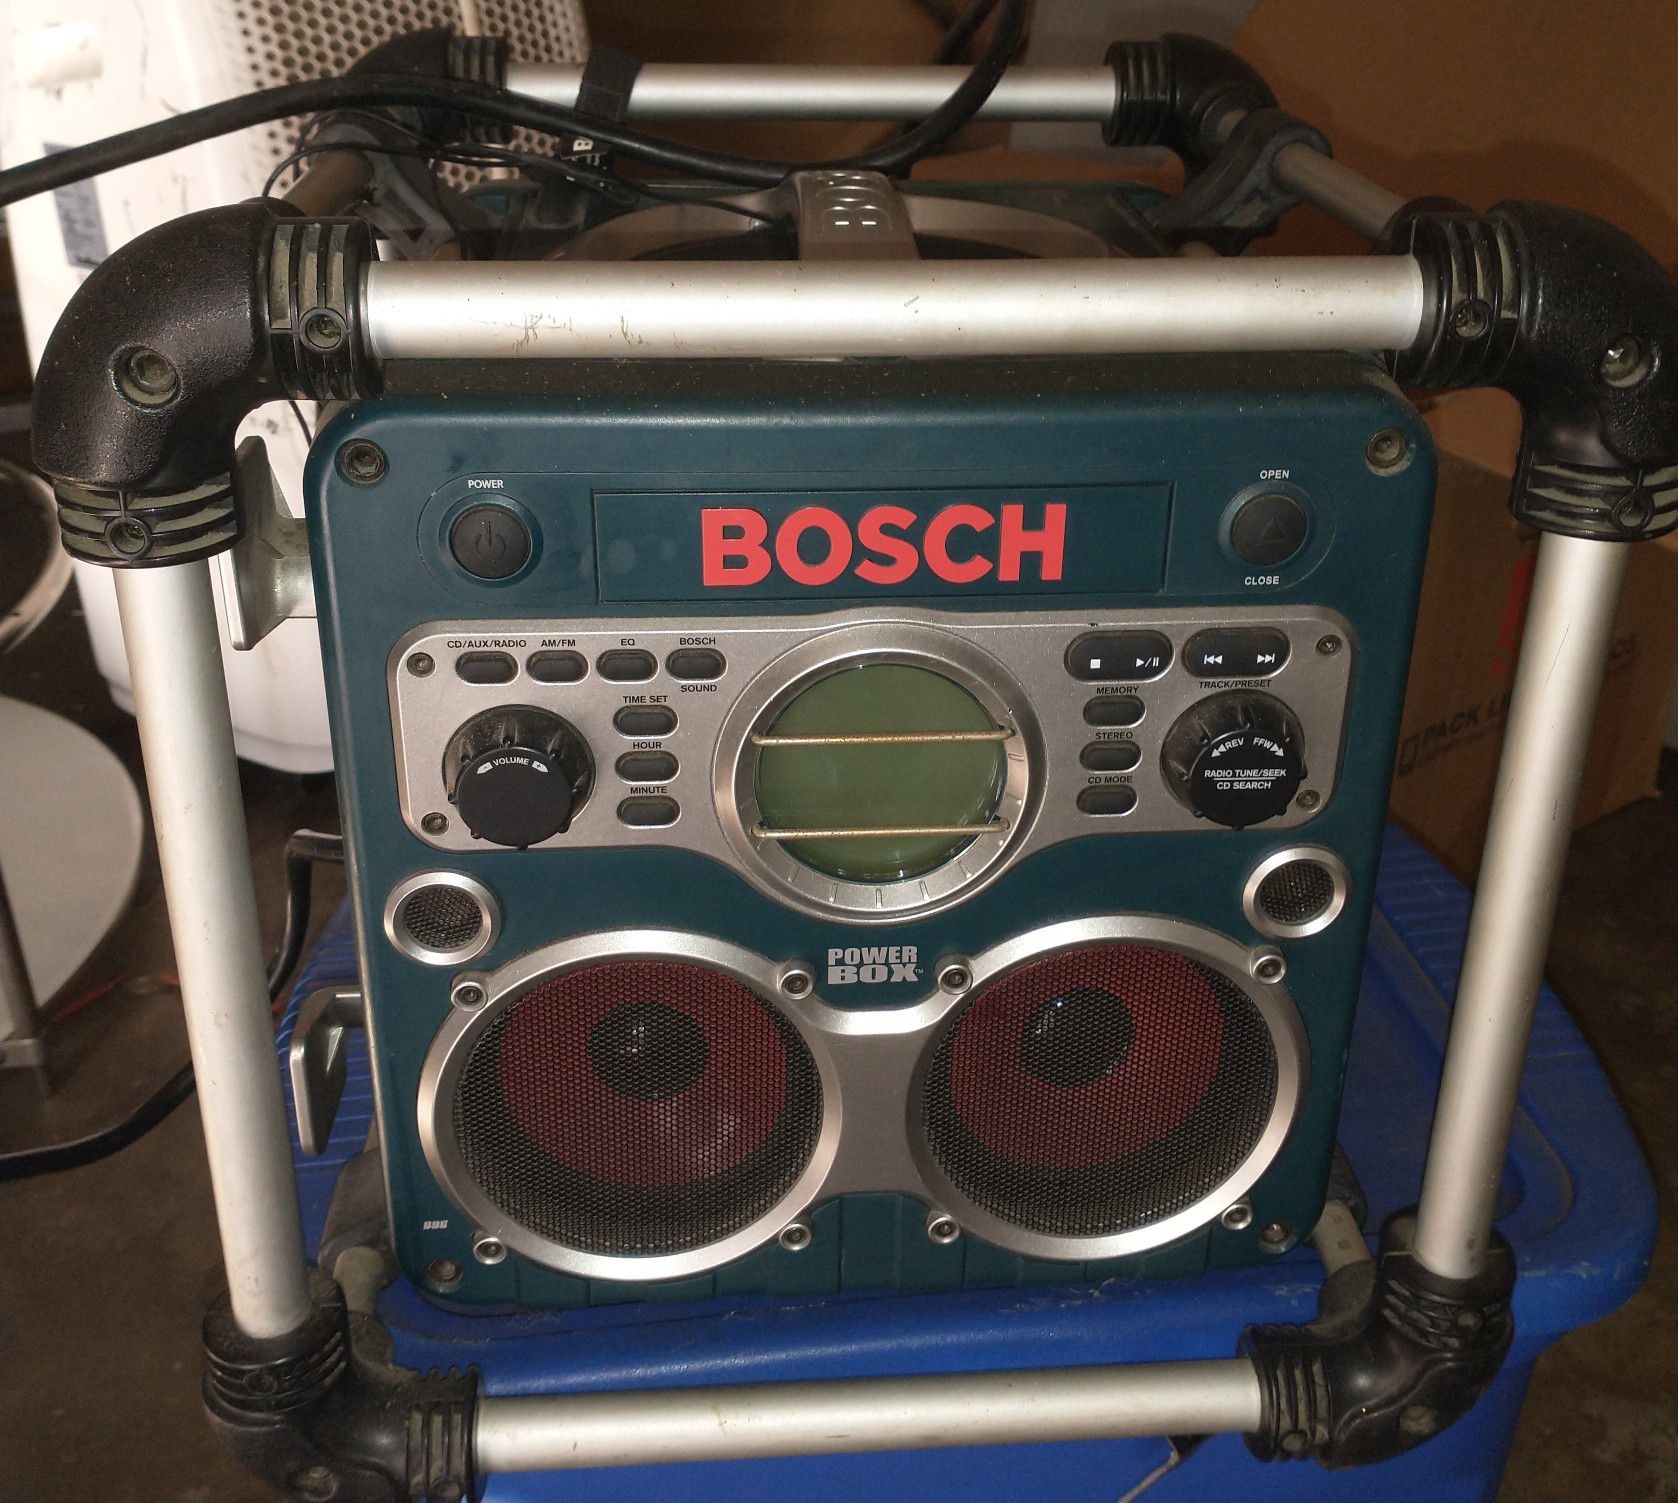 Speaker Bosch brand w/ cd player